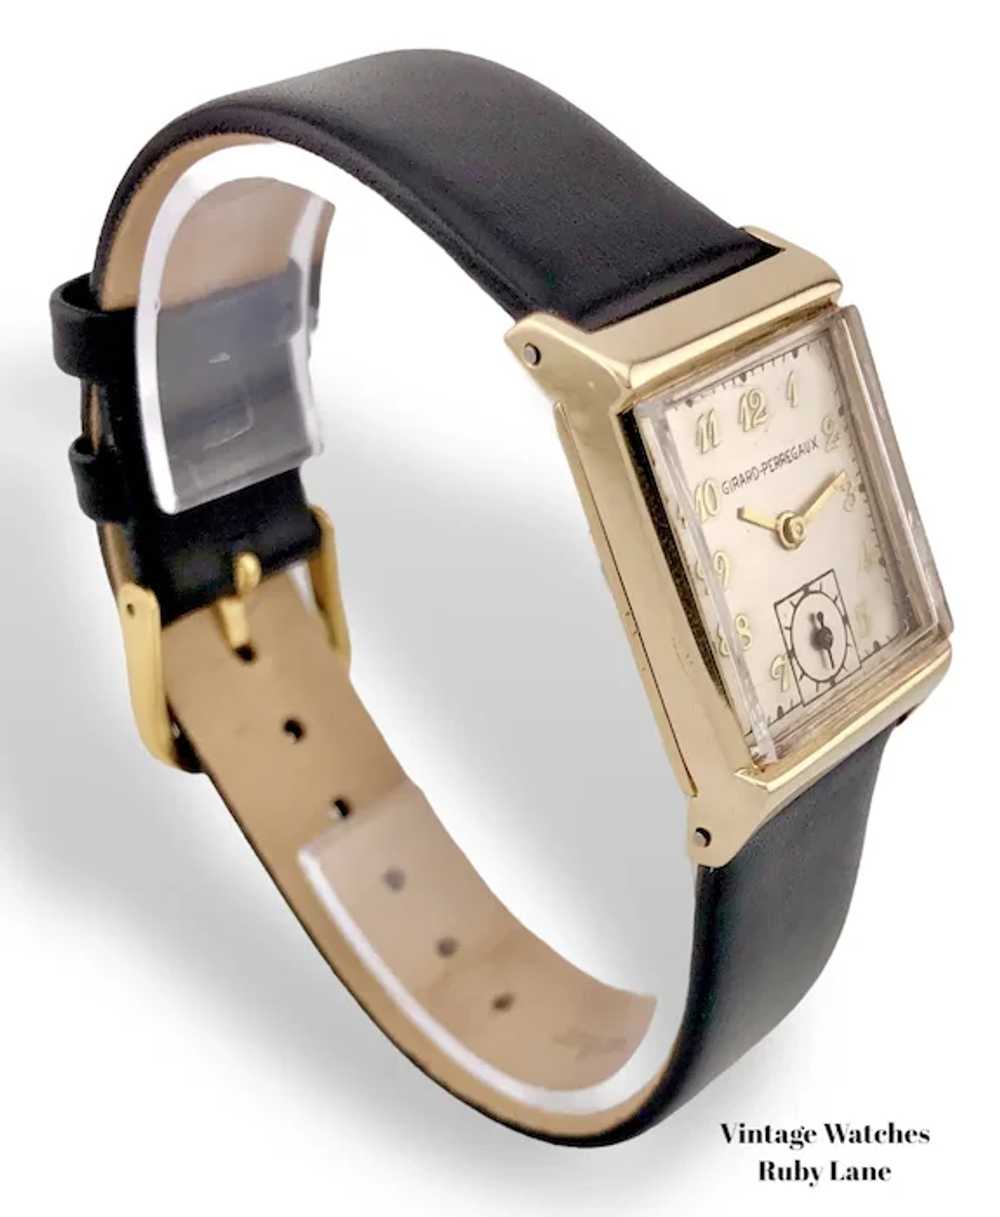 1948 Girard Perregaux 14K Gold Vintage Watch - image 2